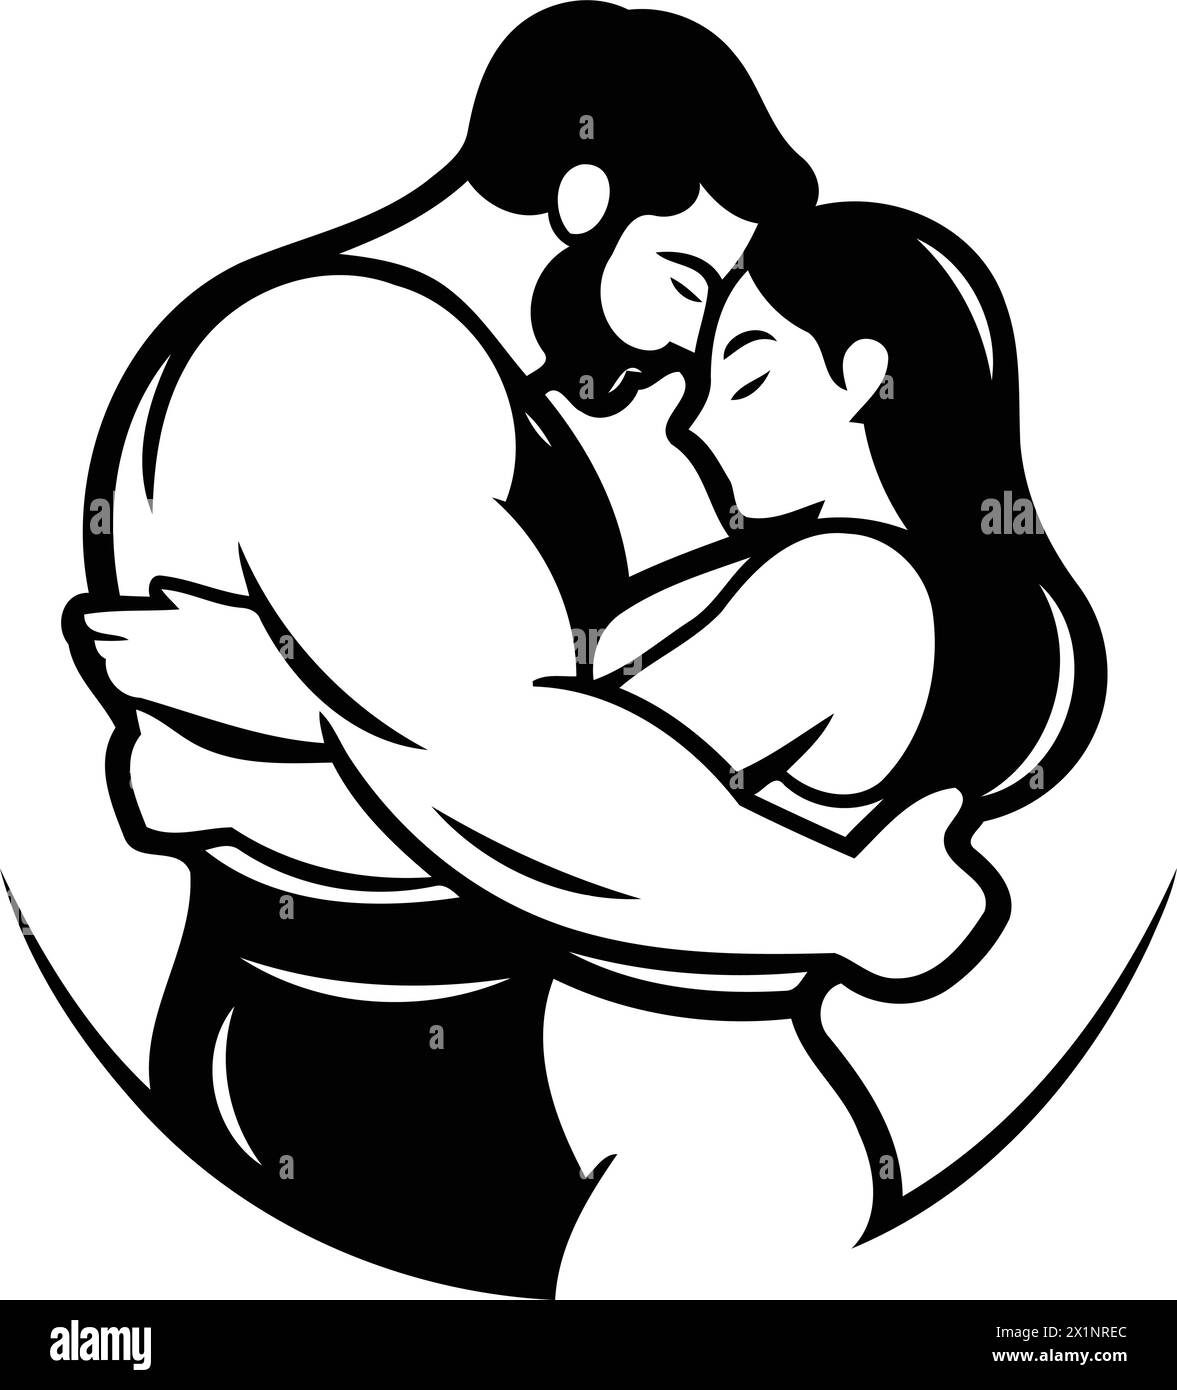 Vektor-Illustration eines liebevollen Paares, das sich umarmt. Umarmen und küssen Stock Vektor